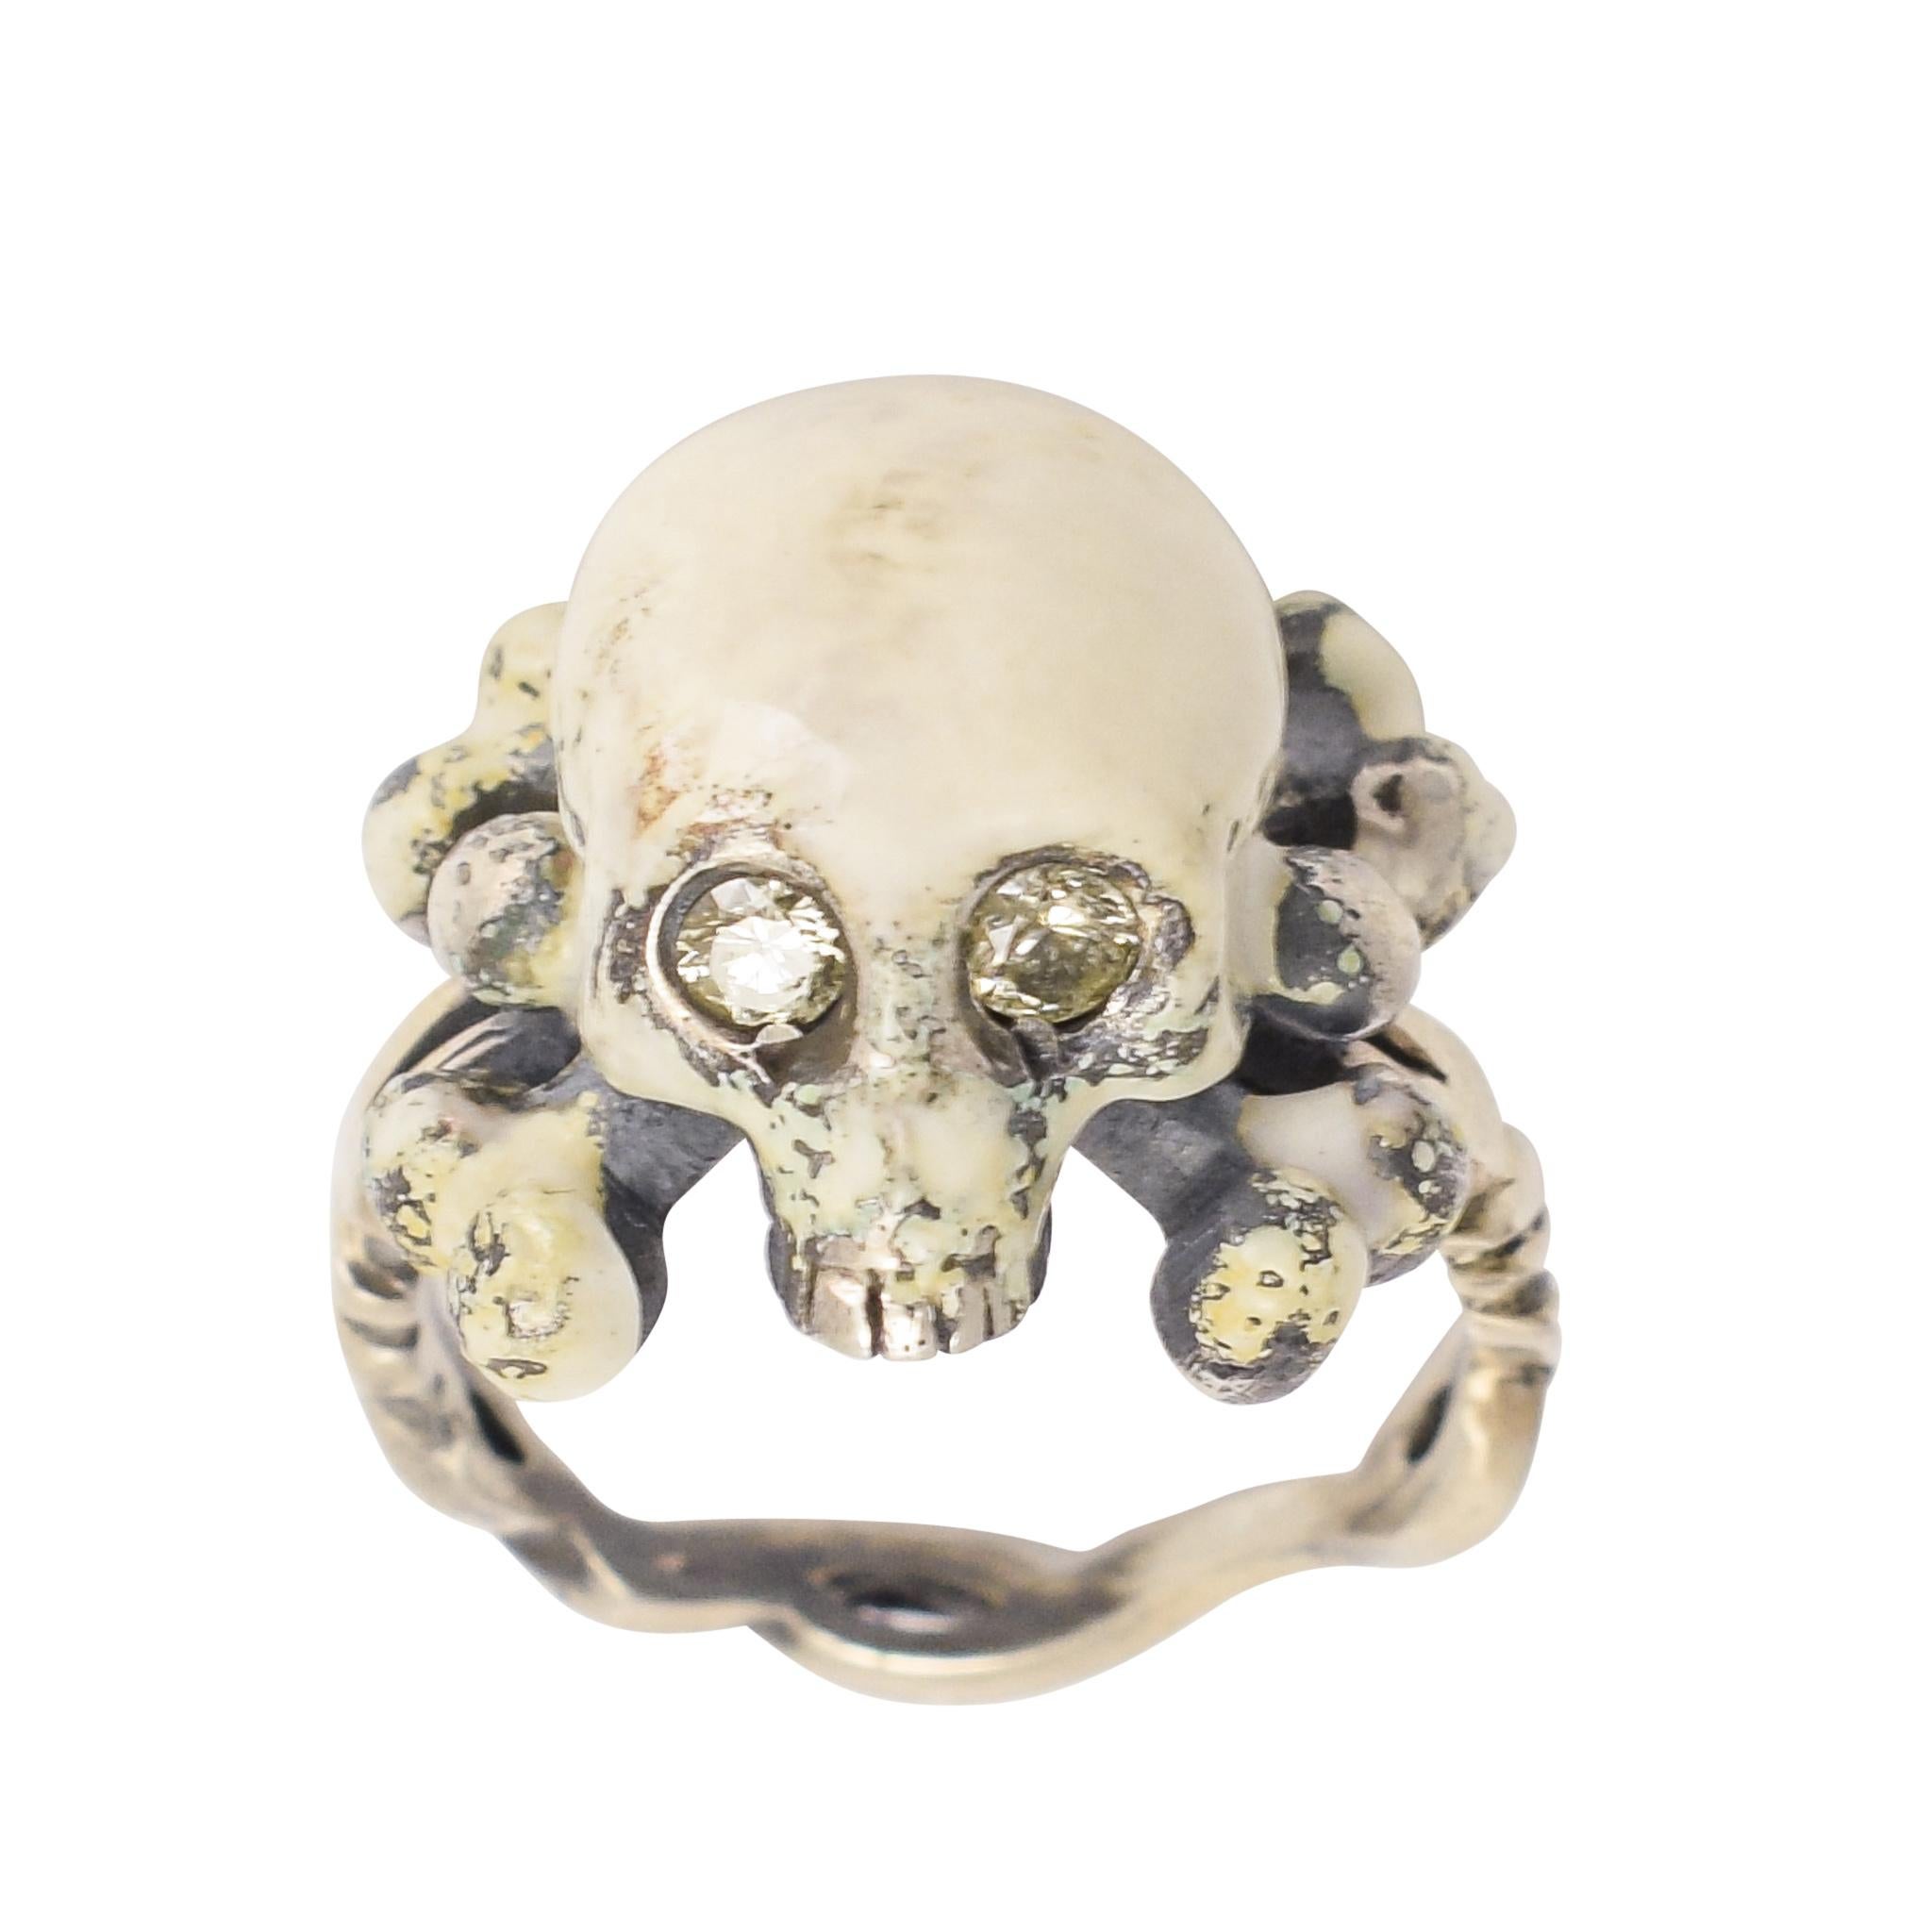 BL Bespoke "Skull and Crossbones" Diamond Memento Mori Ring For Sale